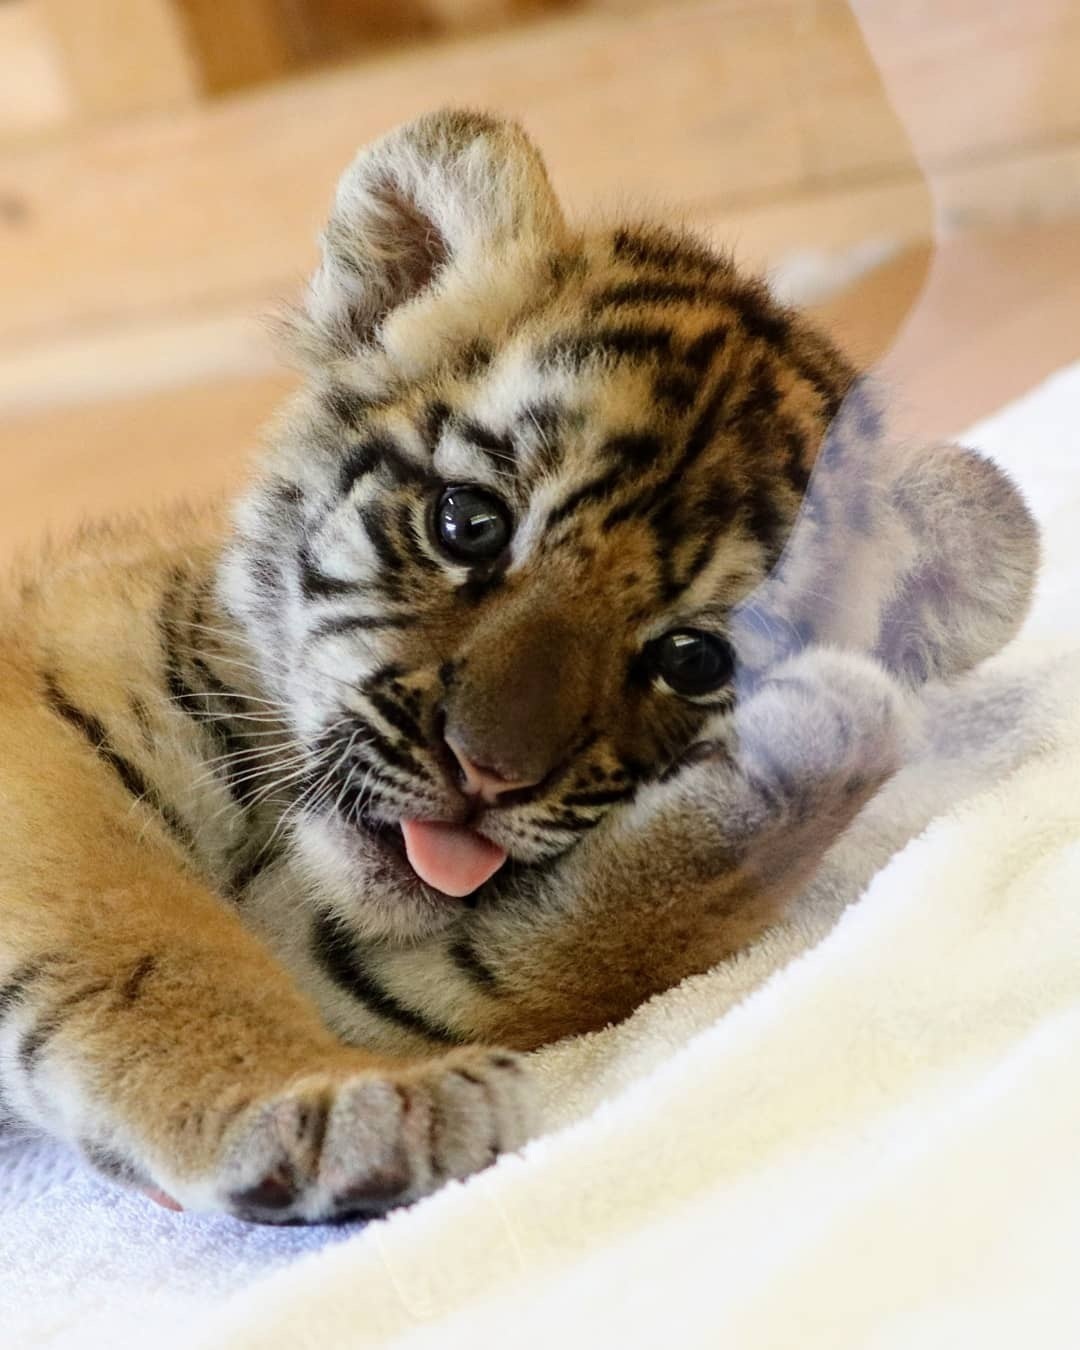 呆萌可爱的小老虎,没想到老虎小时候是这个样子!